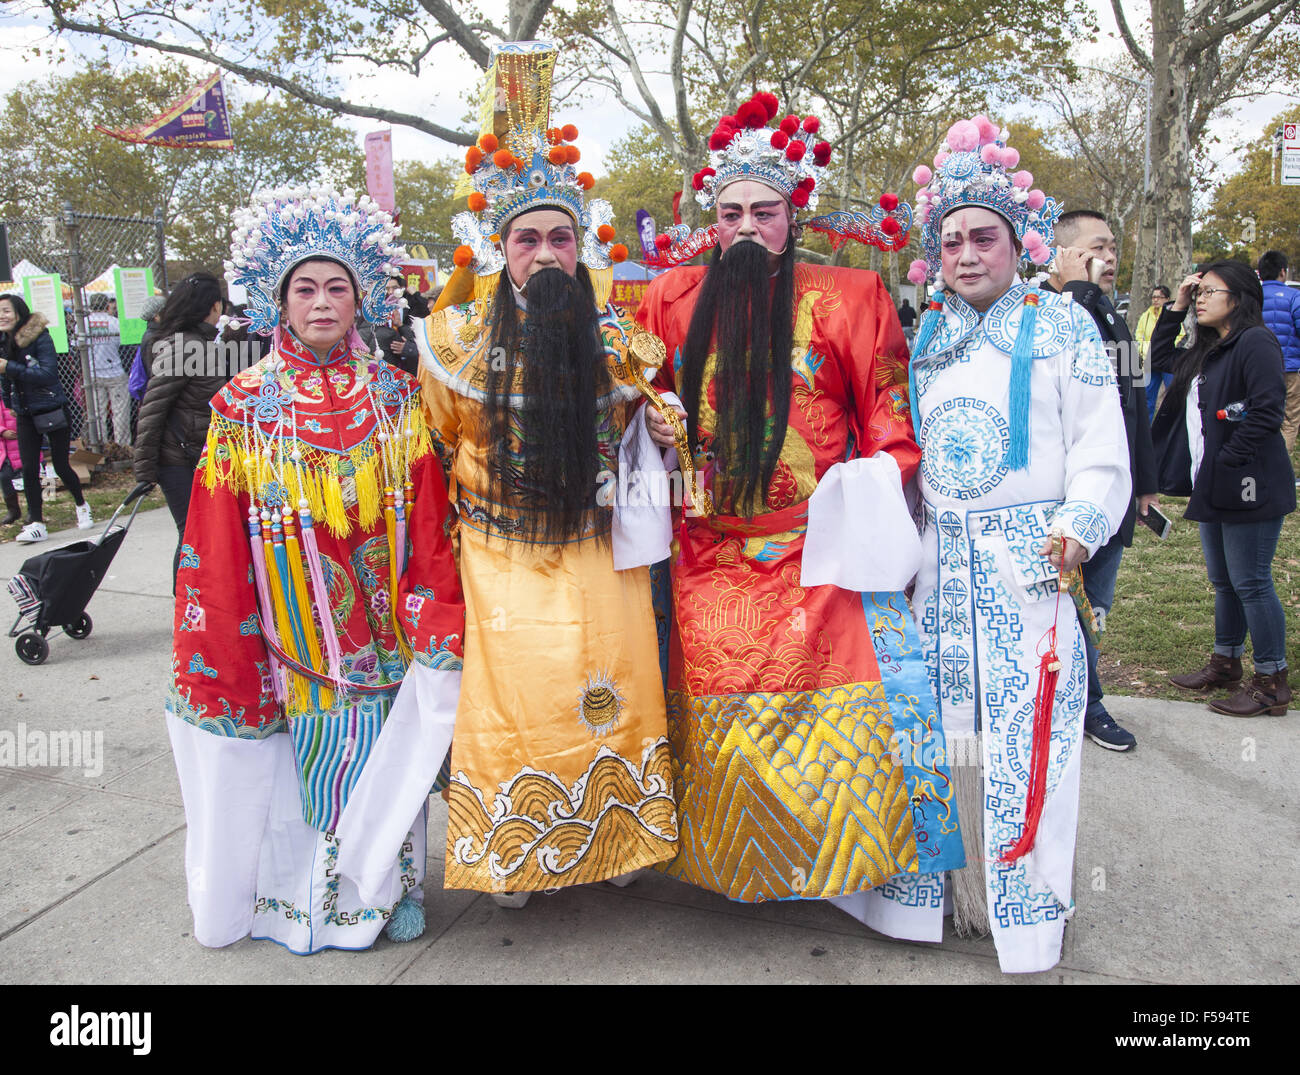 Completamente costume di cantanti lirici in corrispondenza di un cinese festival di autunno e la parata in Sunset Park, Brooklyn, New York. Foto Stock